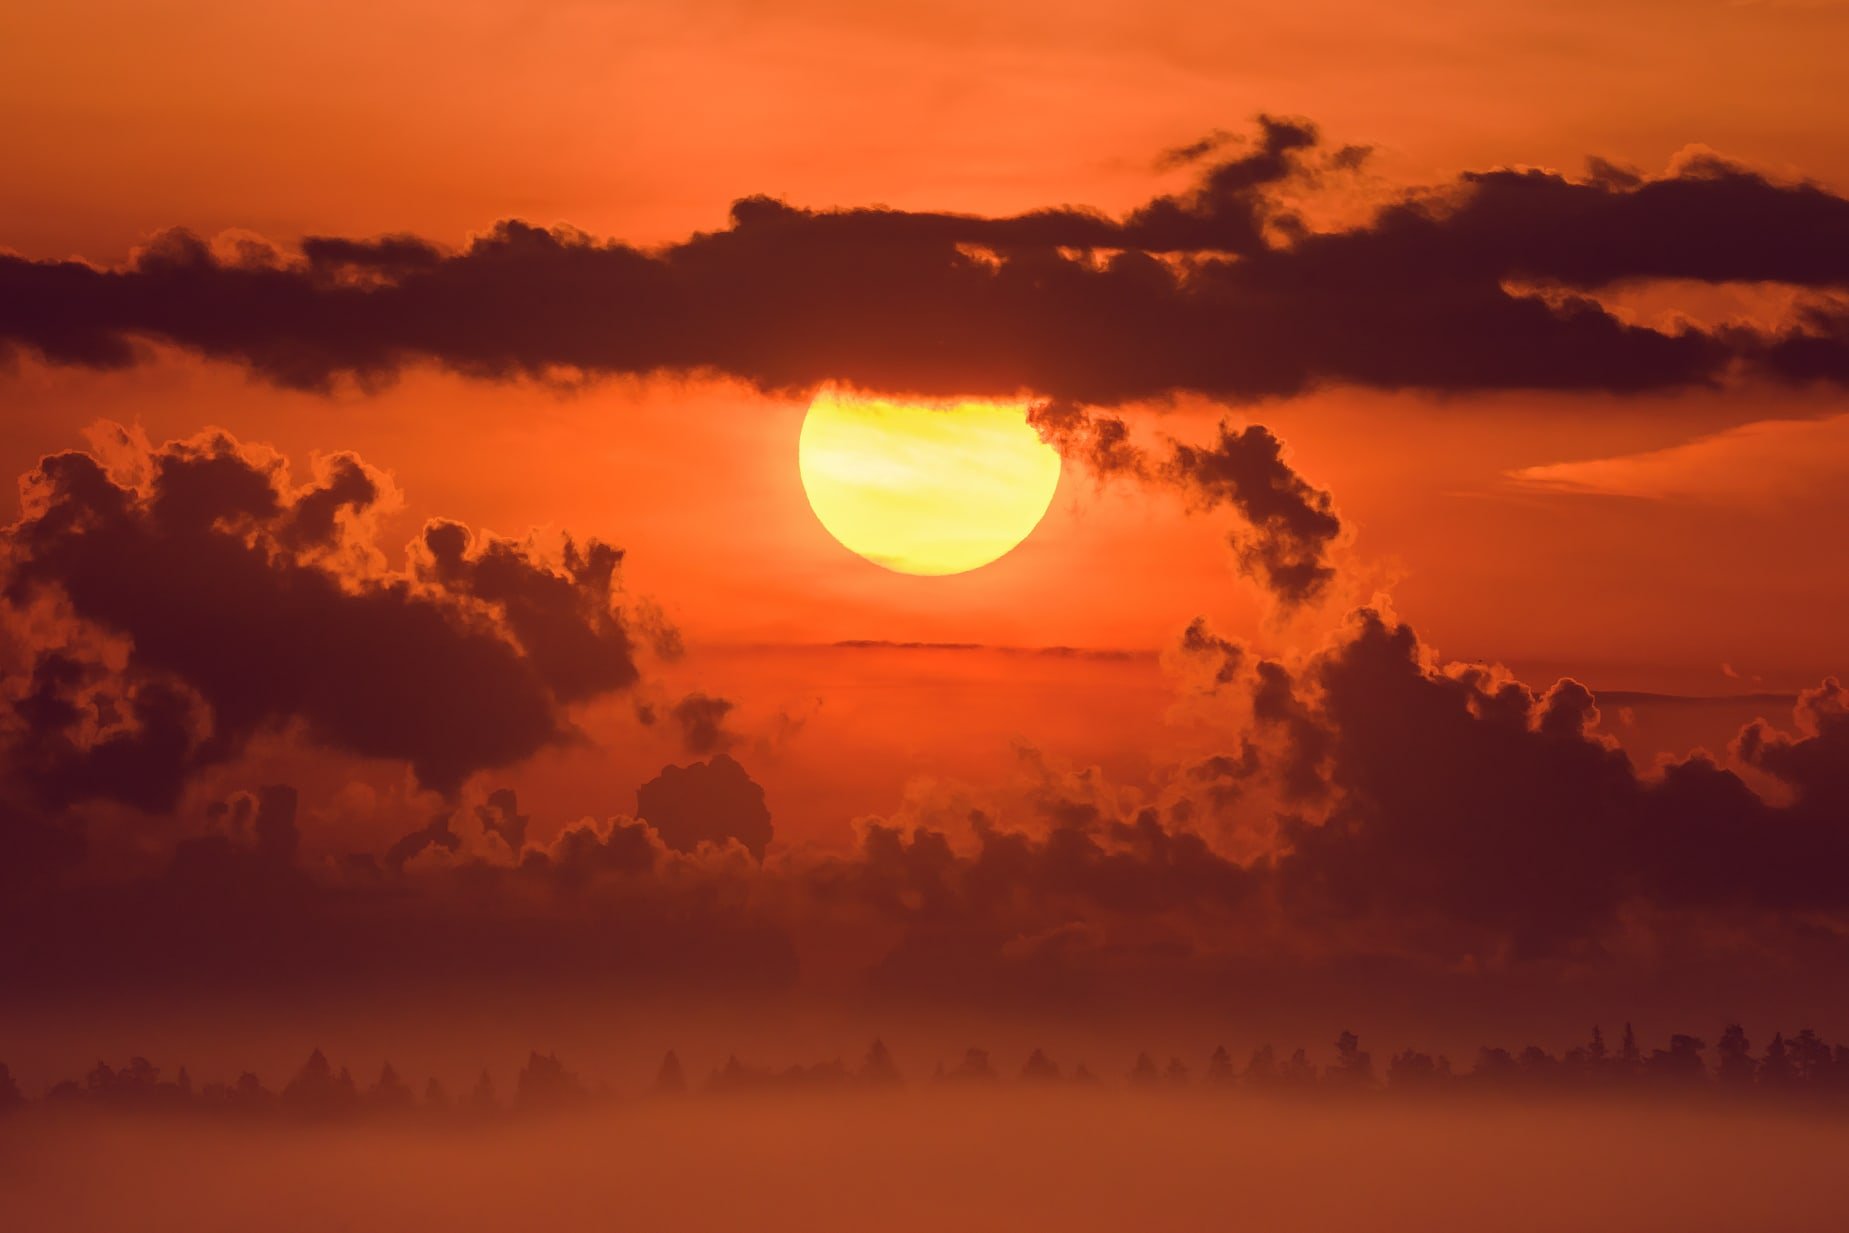 солнце, солнечный диск, солнечно, рассвет, оранжевый свет, летнее утро, силуэт леса, лес, даль, облака, объёмные облака, кучевые облака, восход, огненный шар, туман, Ксения Соварцева